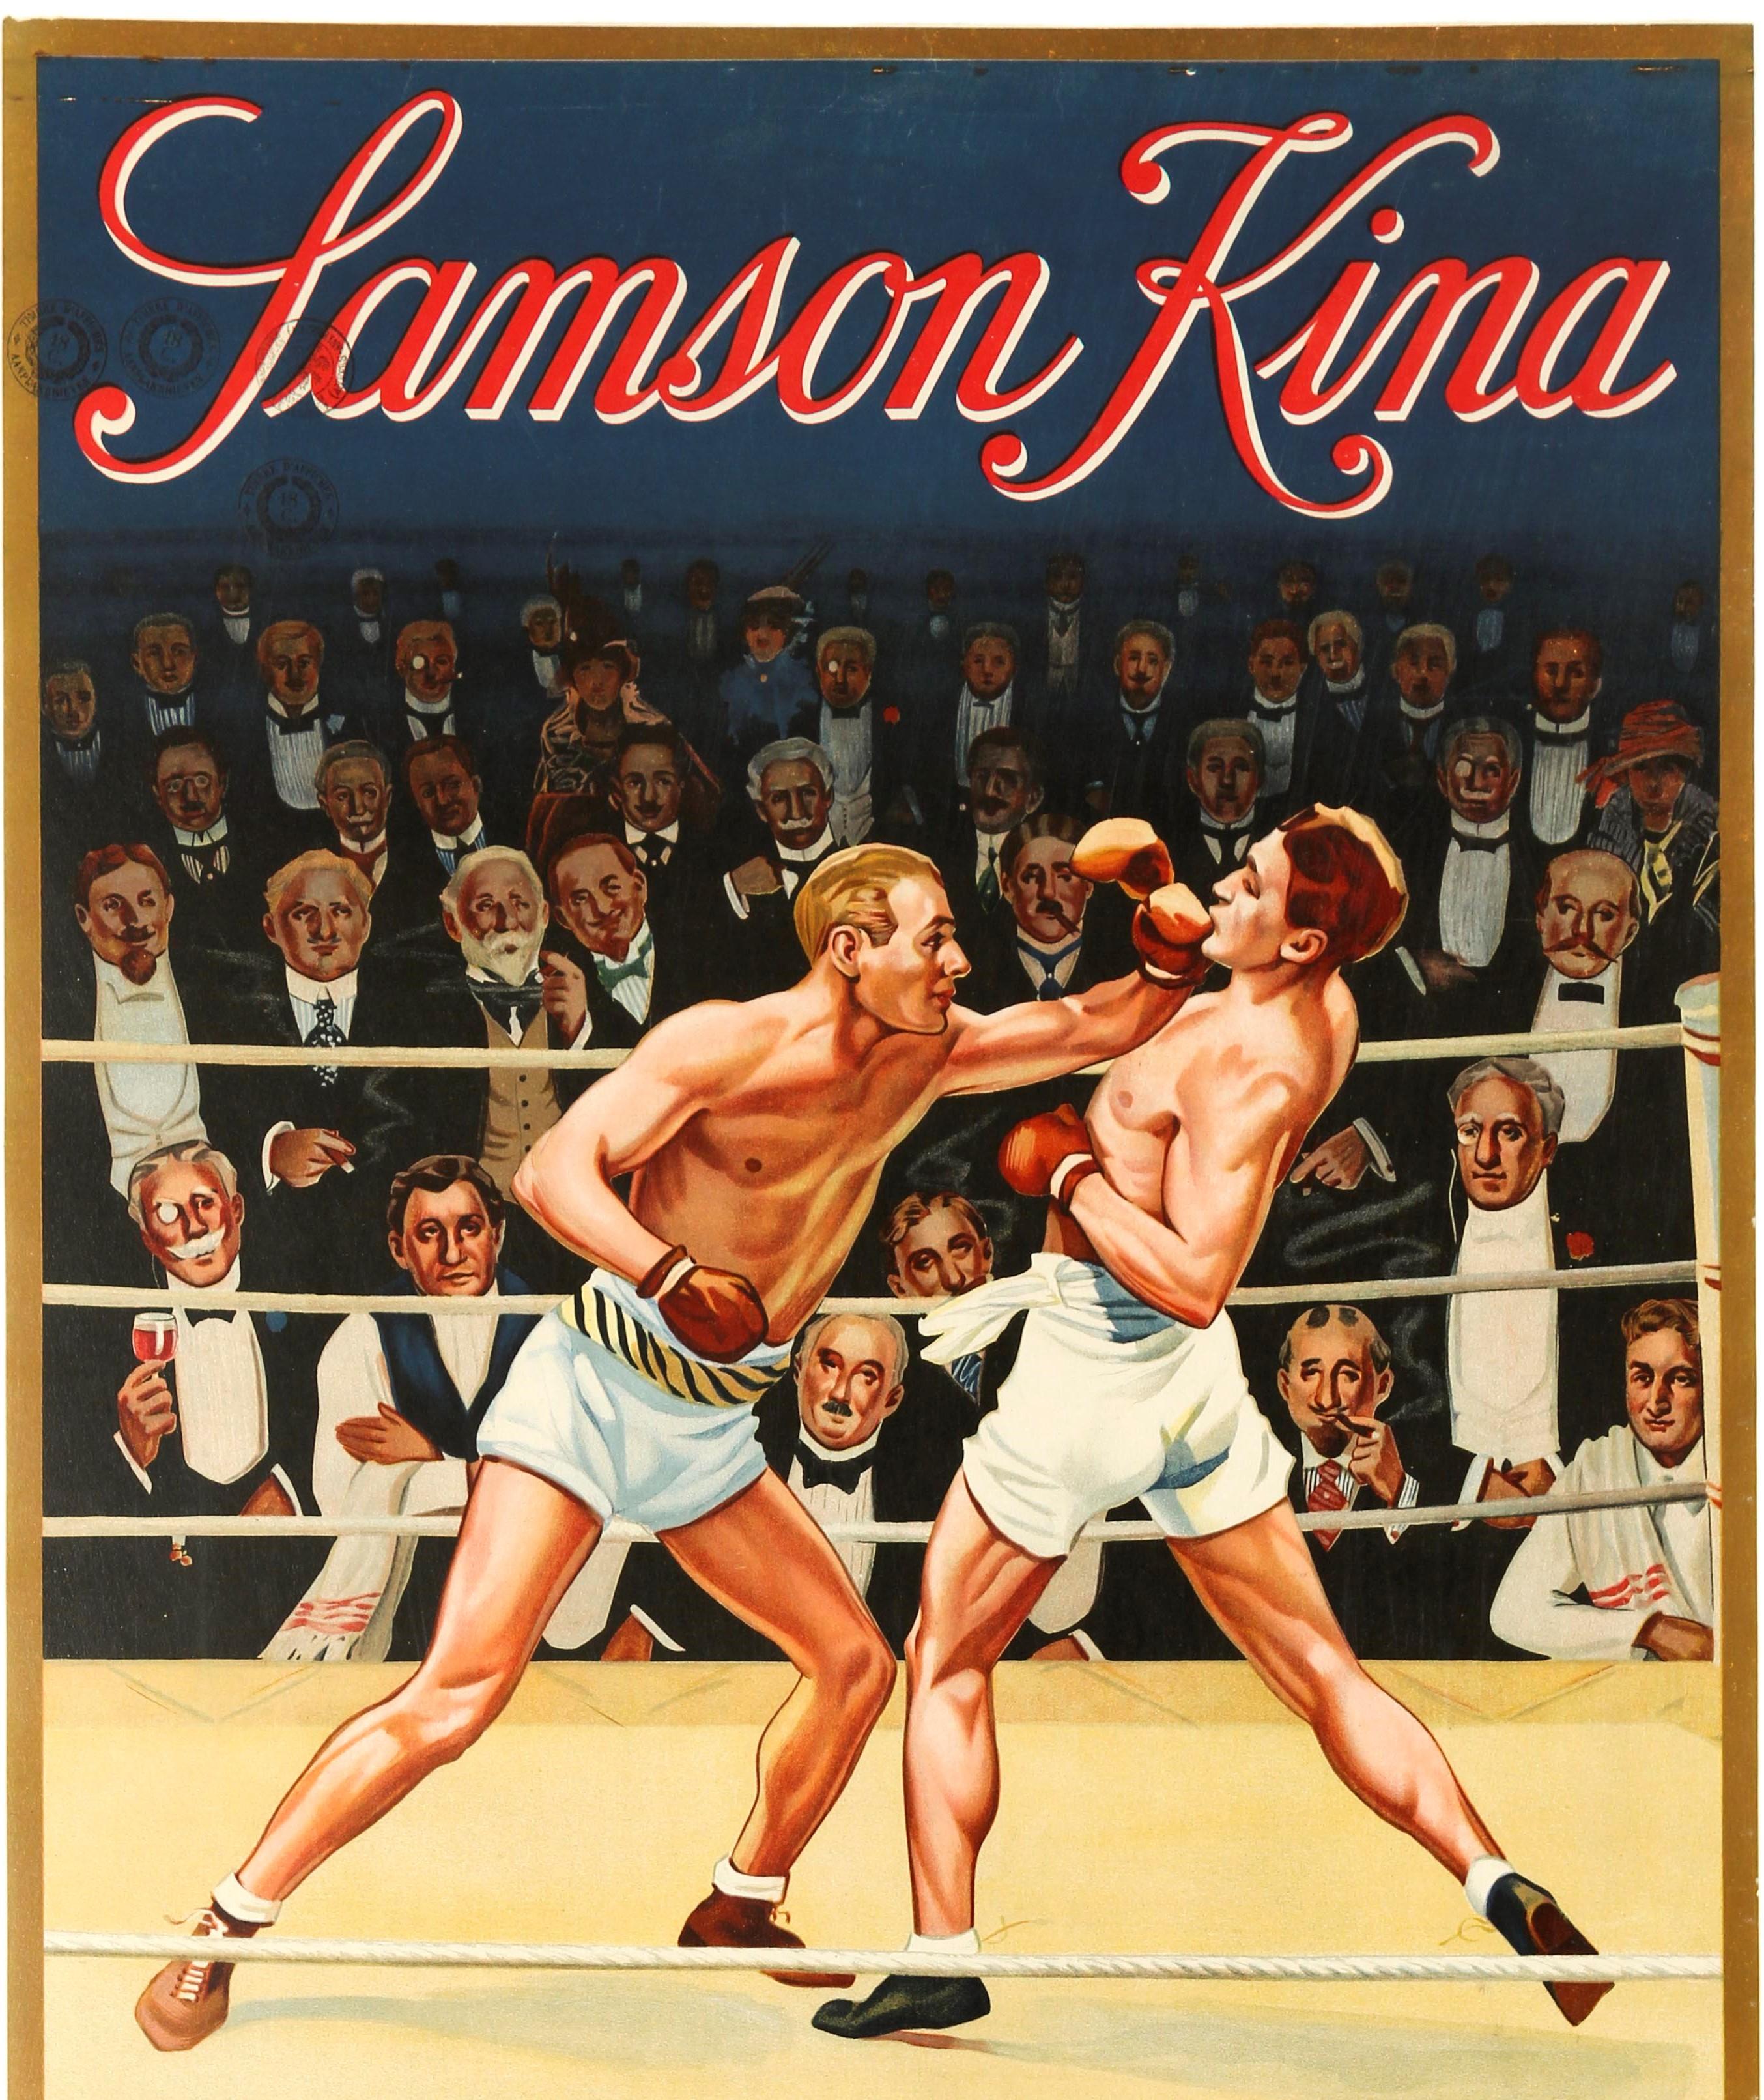 Affiche publicitaire originale pour l'apéritif belge Samson Kina. L'illustration colorée représente un match de boxe avec deux hommes sur le ring et des spectateurs élégamment vêtus qui regardent le combat des deux côtés, certains tenant des verres